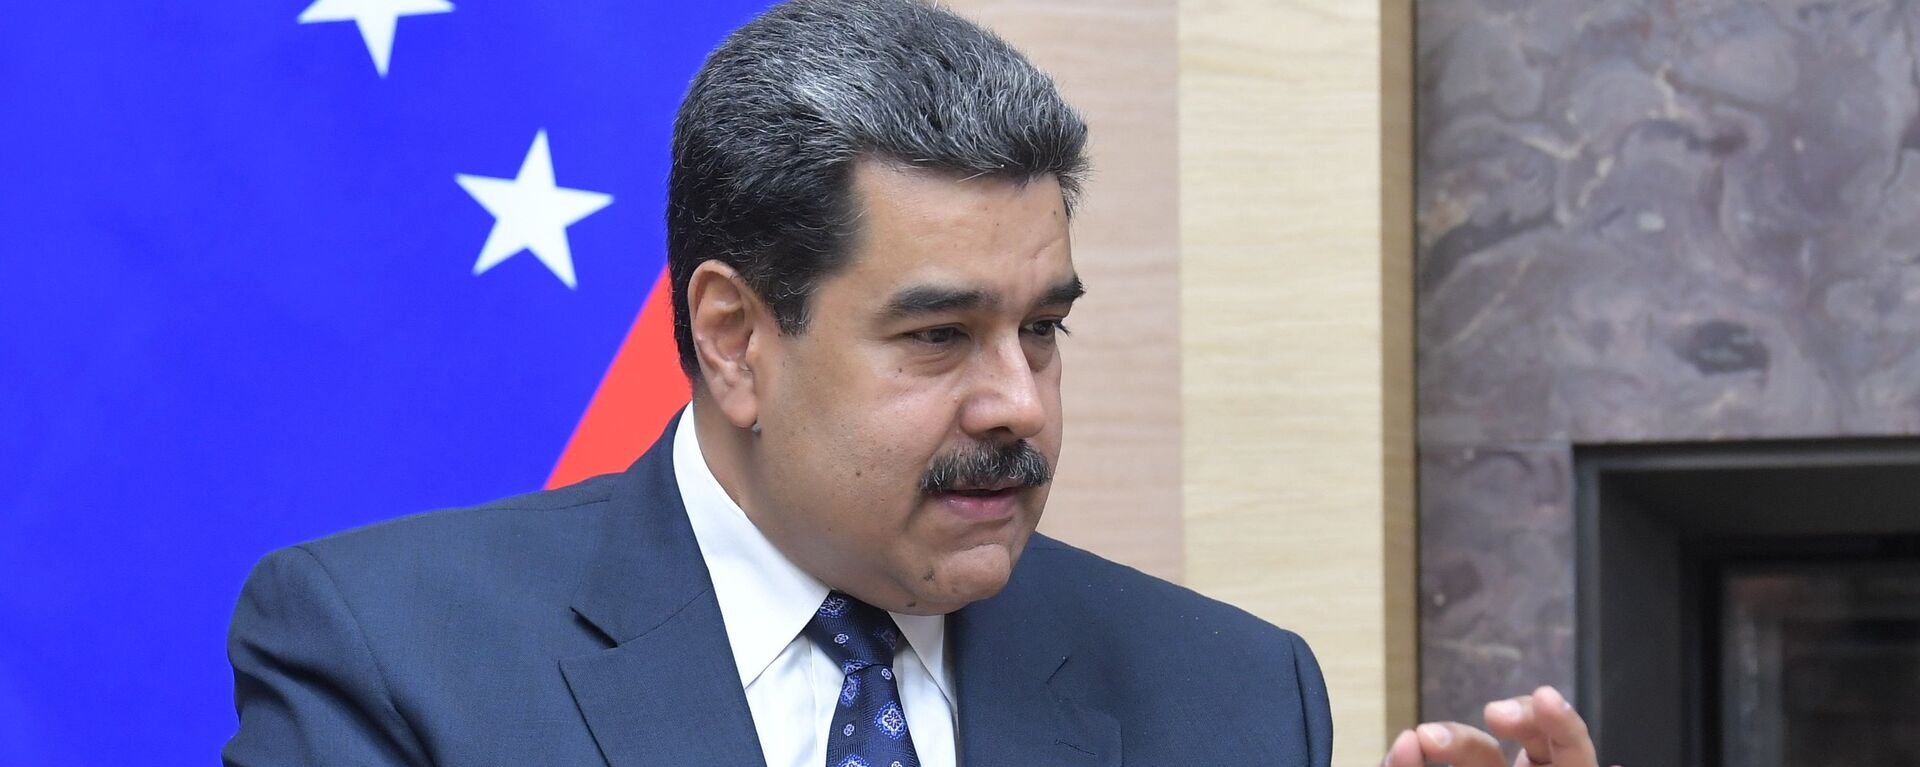 Nicolás Maduro, presidente de Venezuela - Sputnik Mundo, 1920, 23.11.2021